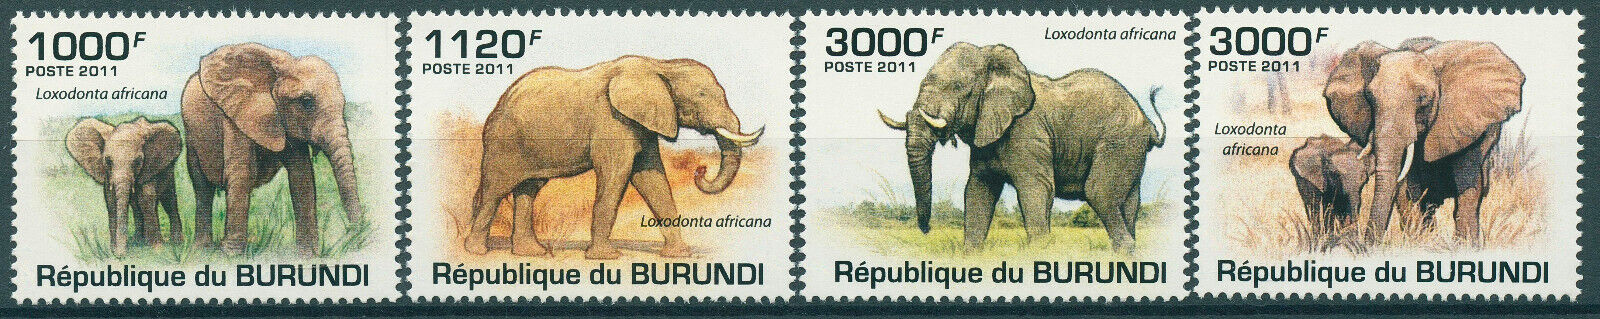 Burundi 2011 MNH Elephants Stamps African Bush Elephant Wild Animals 4v Set